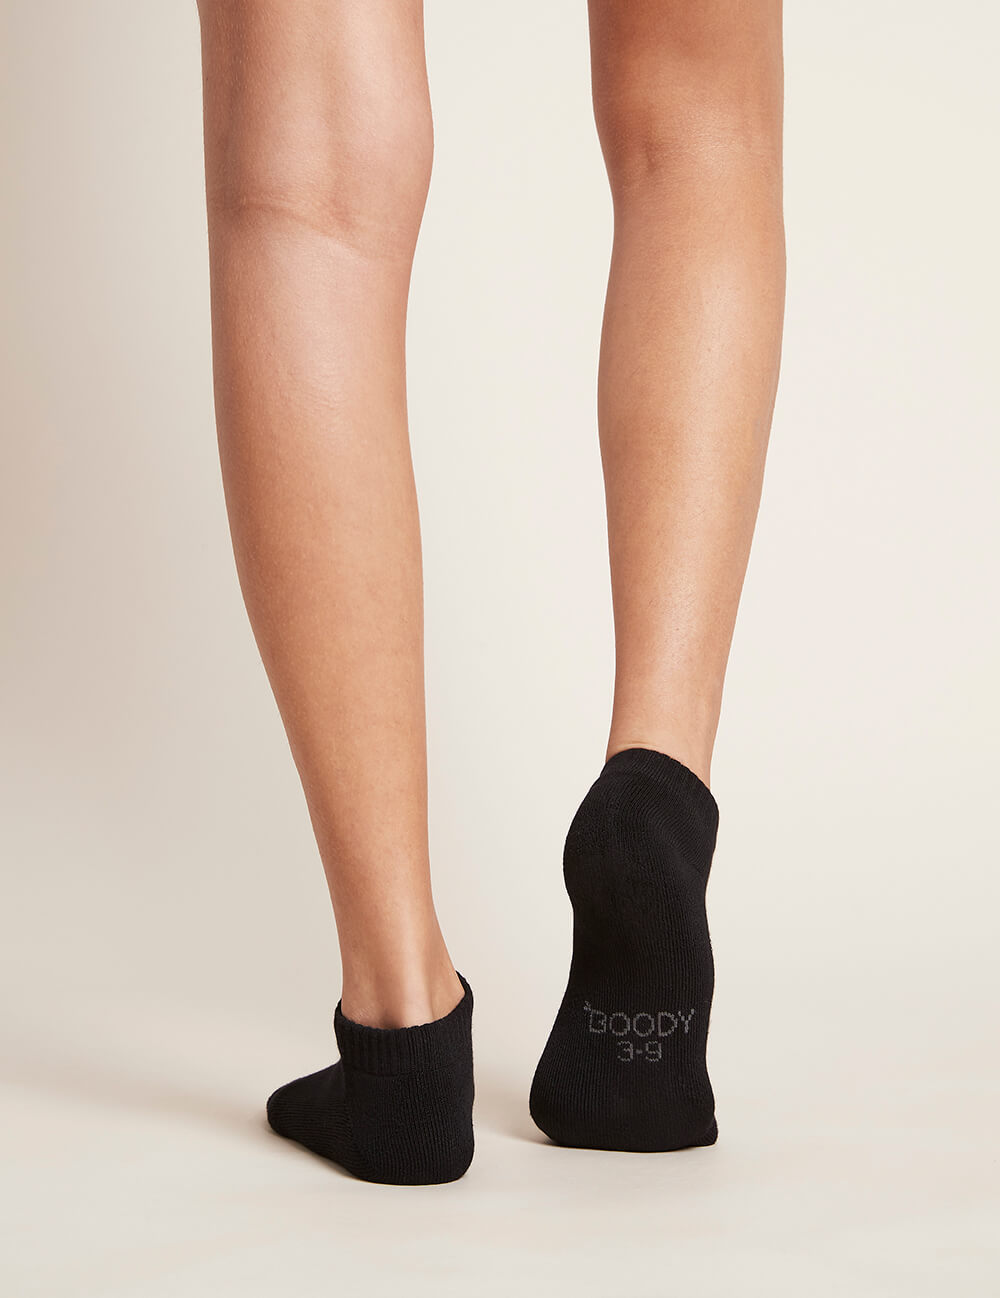 Boody Women's Low Cut Cushioned Sneaker Socks Black Back